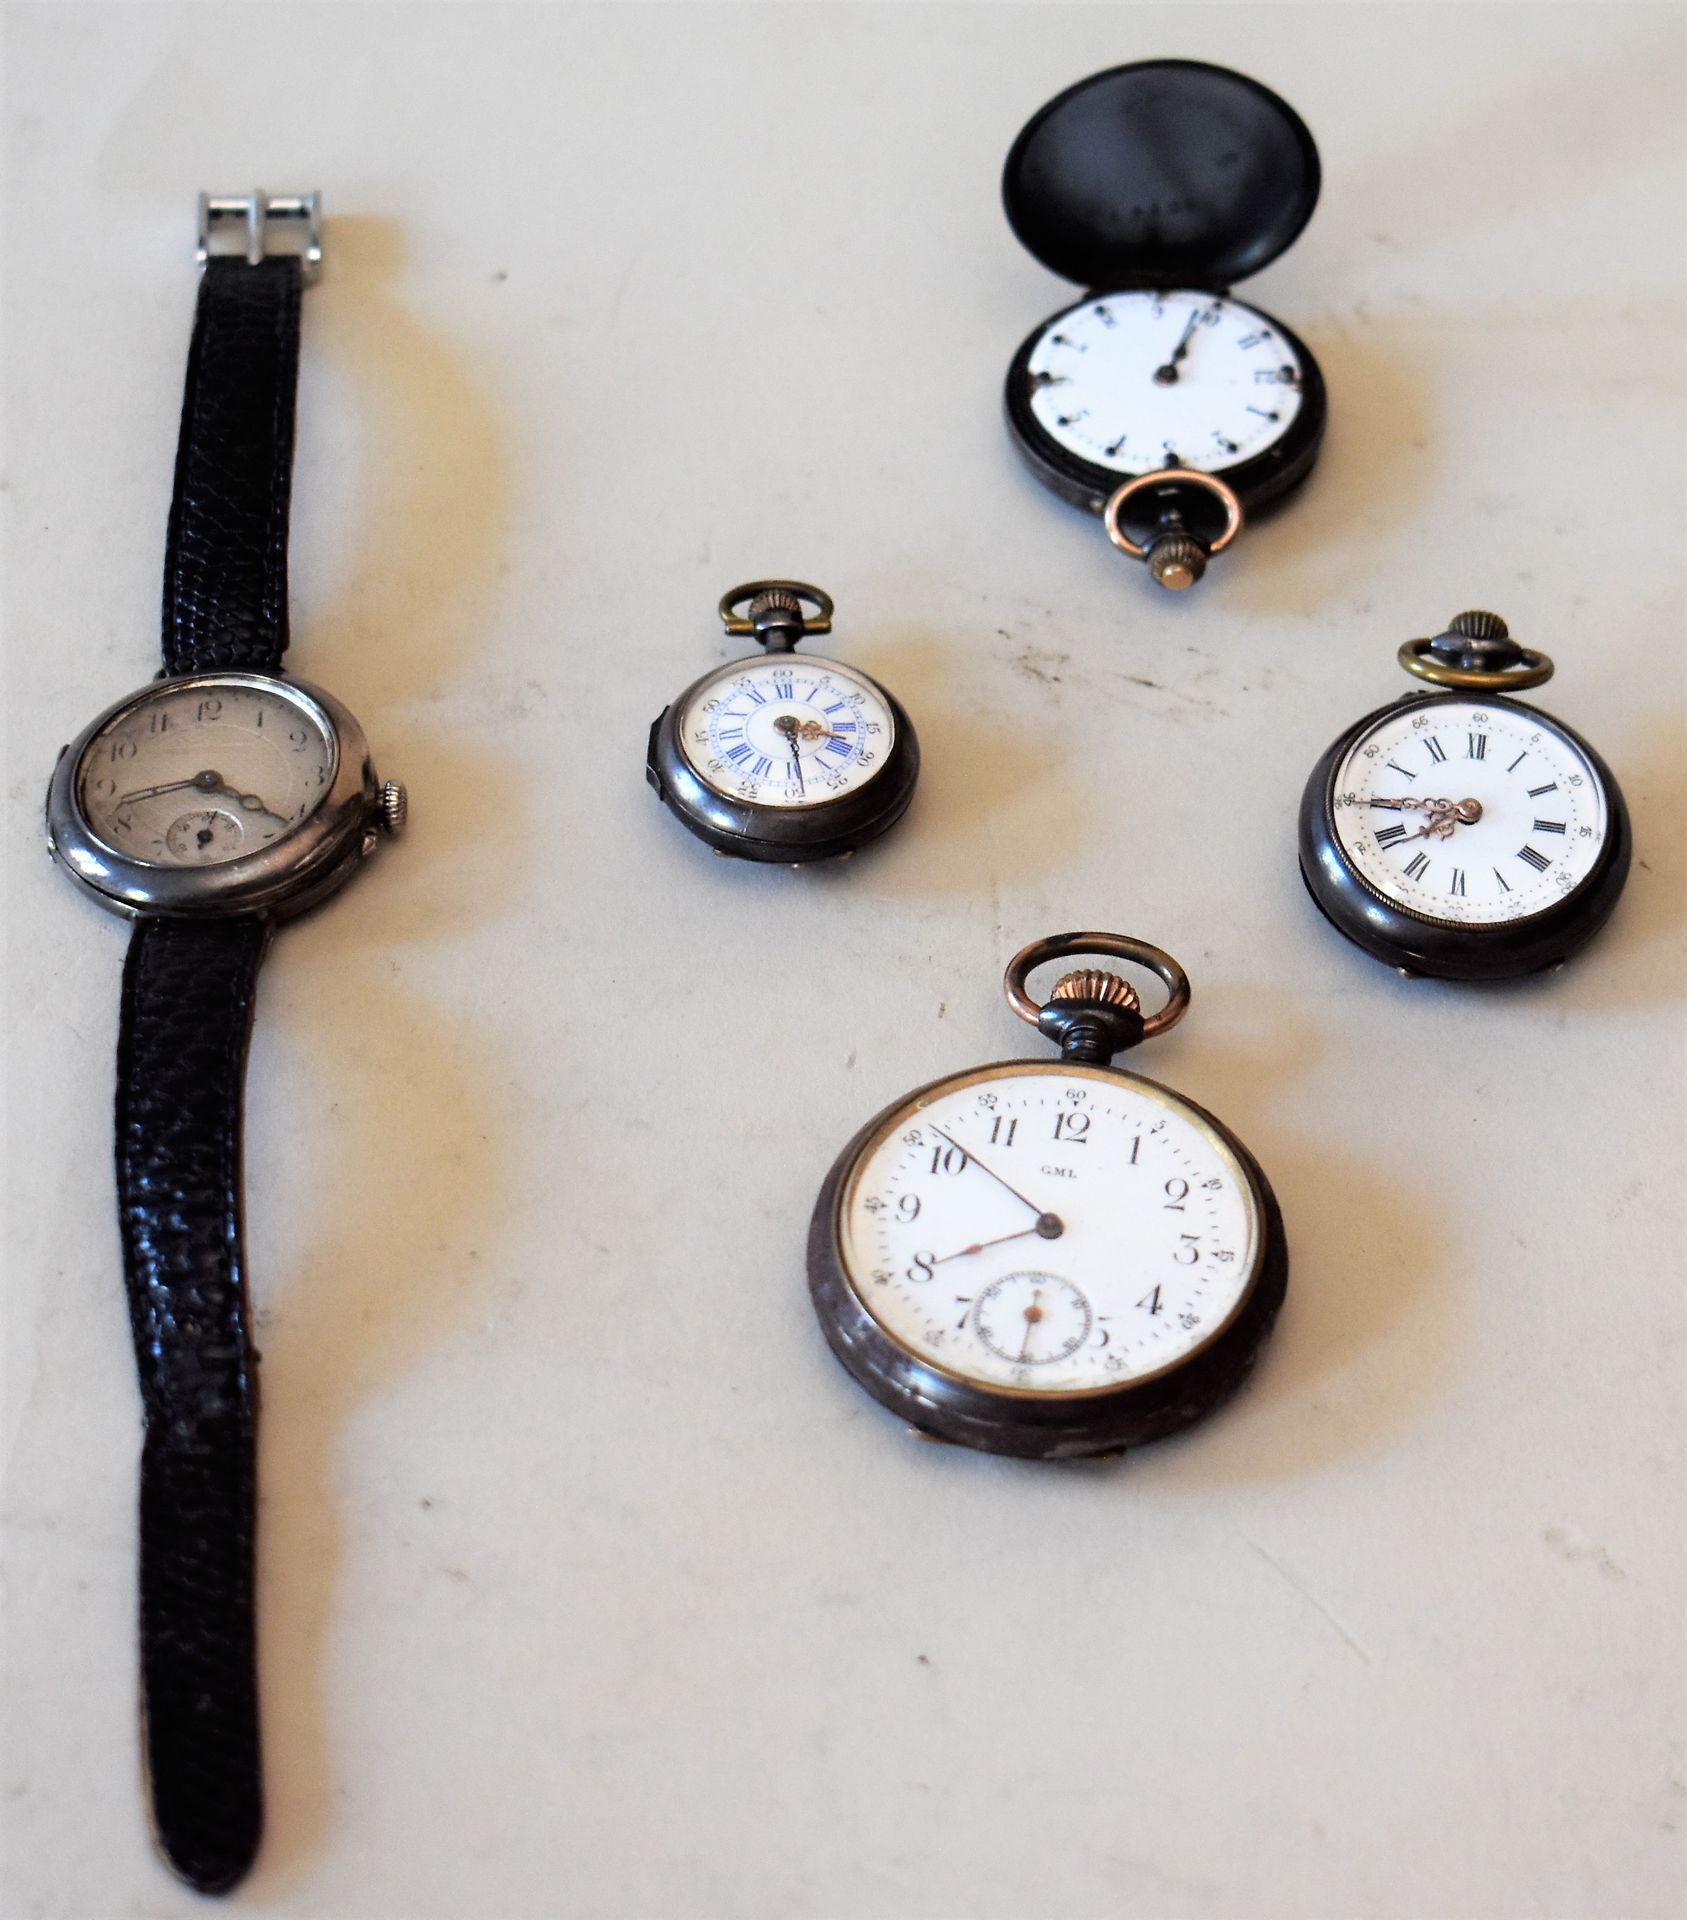 Null 四块钢制颈表和一块银制手镯表，由巴黎的L. LEROY签名（毛重28克）。

交付给公司的批次